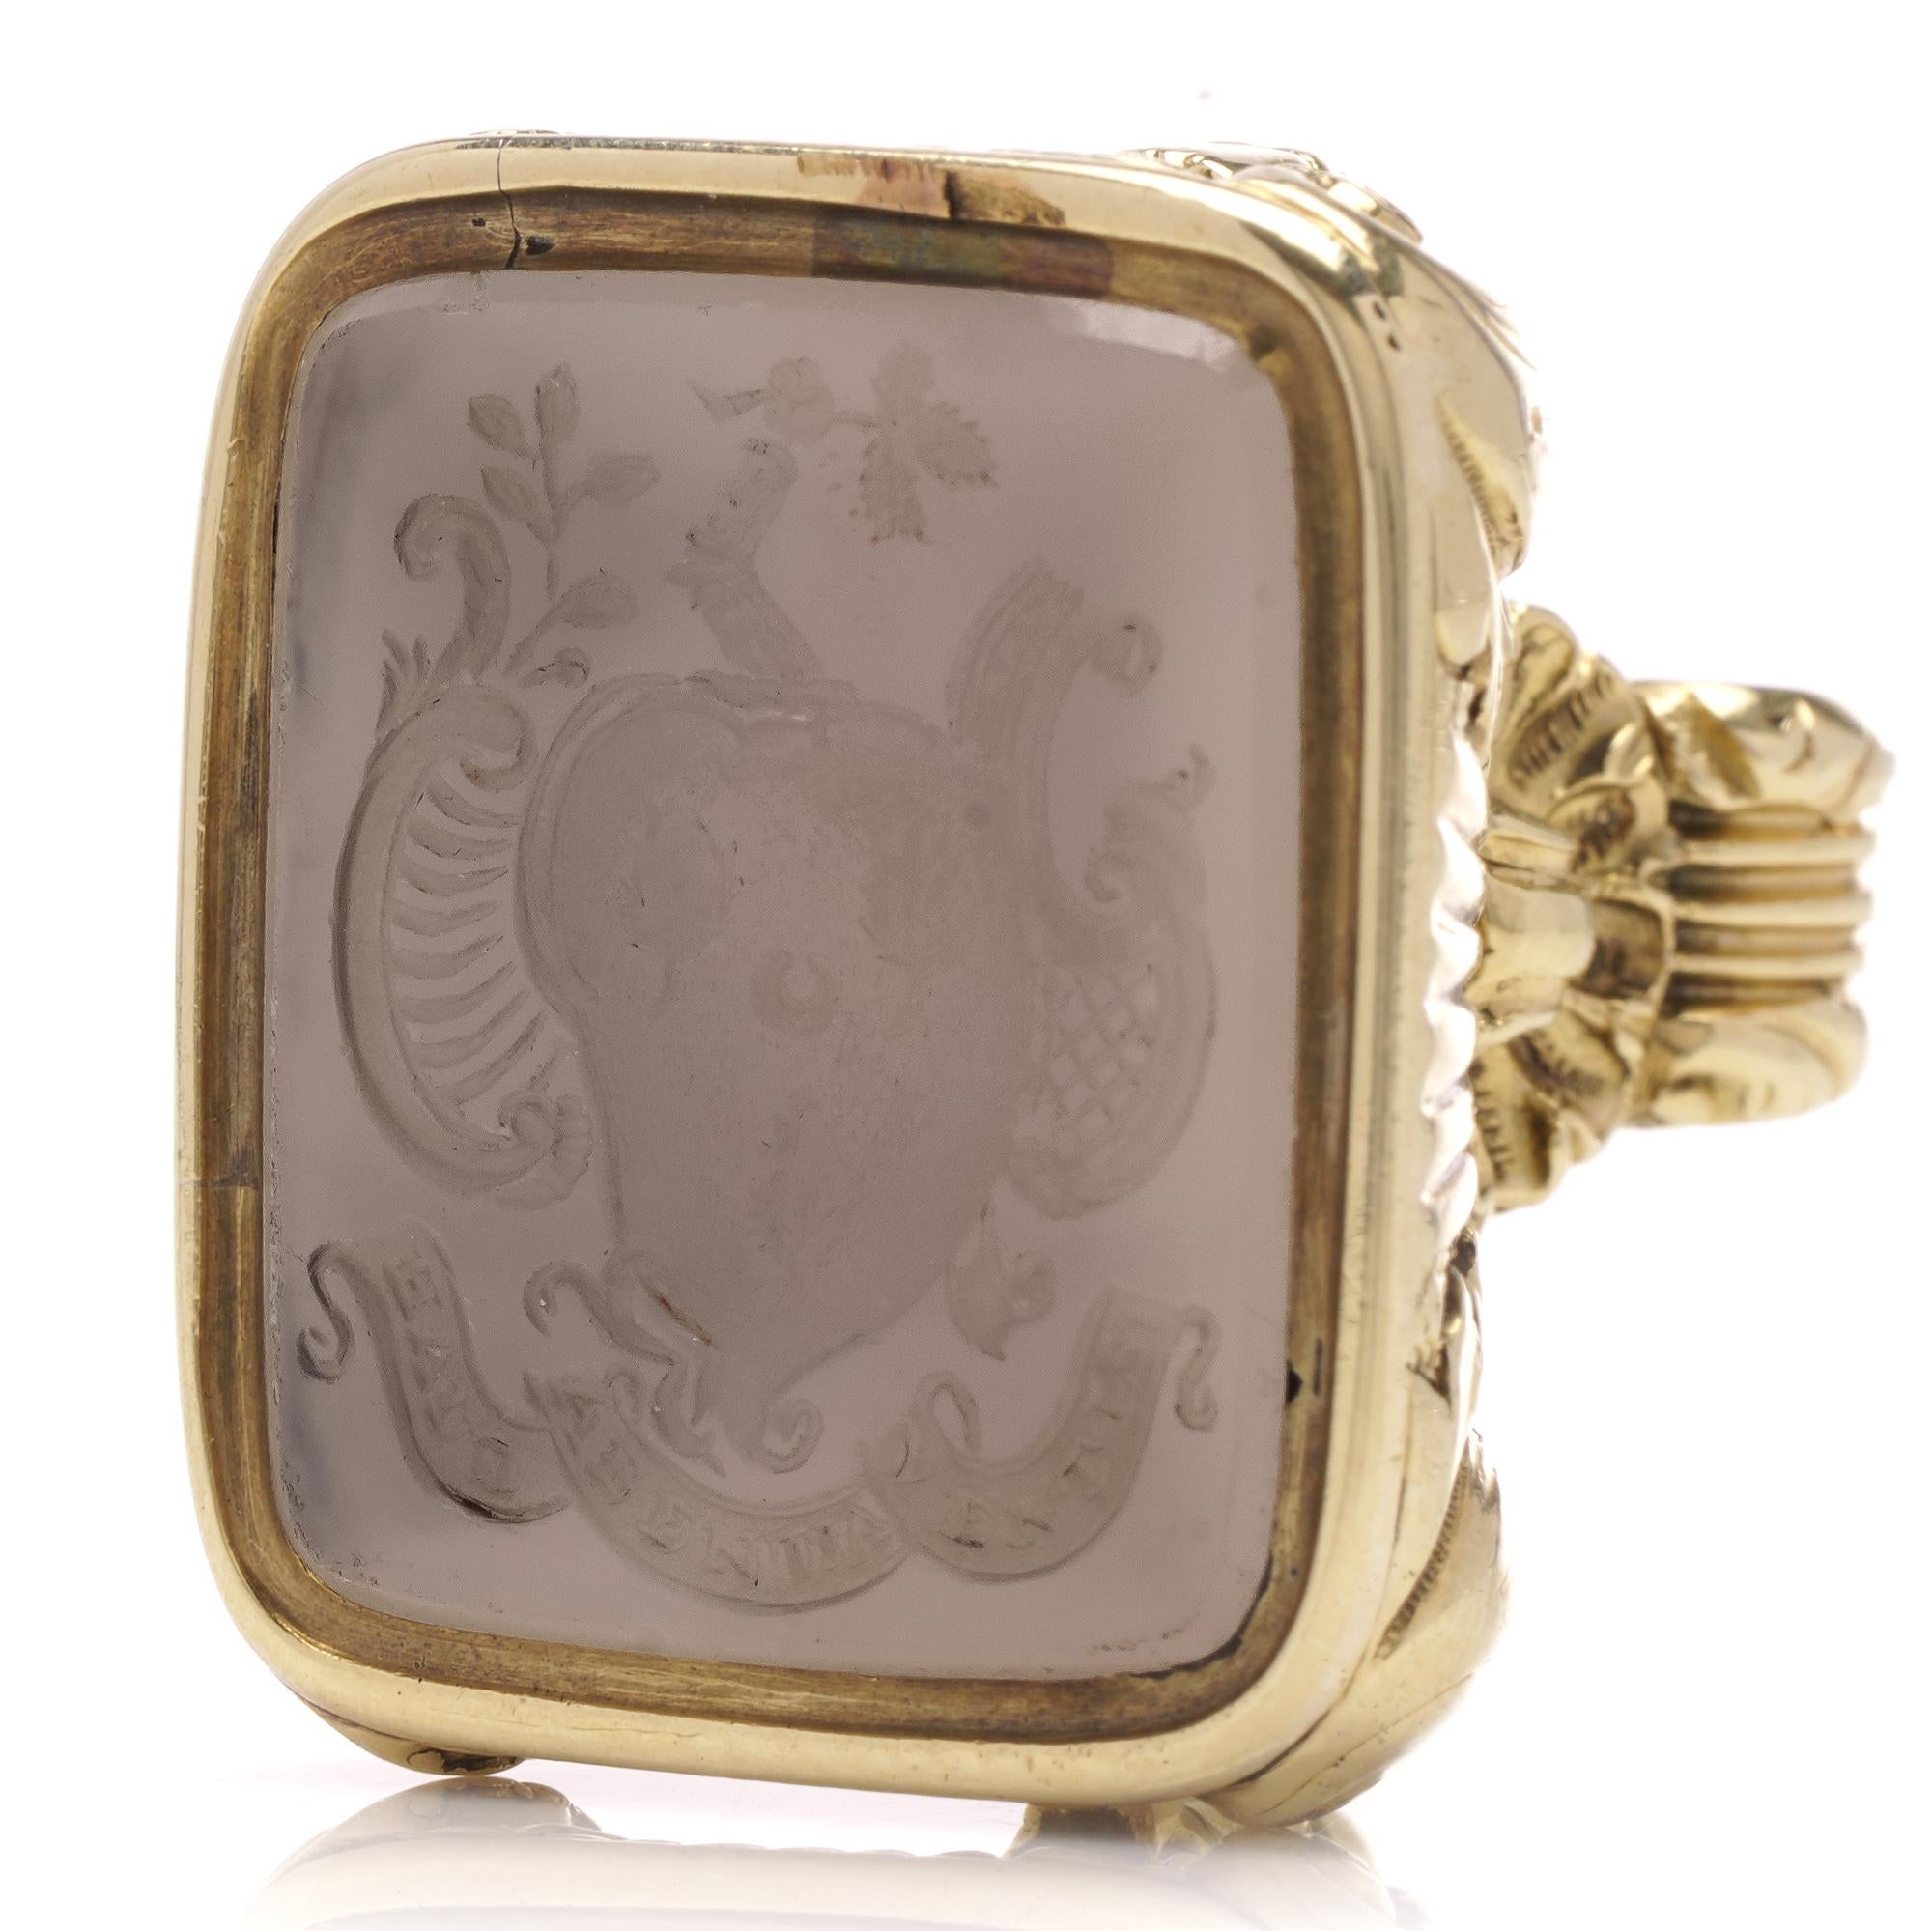 Le sceau présente une intaille en sardonyx sertie dans une monture en or jaune 15kt, mettant en valeur une pierre sculptée représentant les armoiries du nom de famille Irving avec une devise familiale : ' Haud labentia ventis '.

Créée en Angleterre